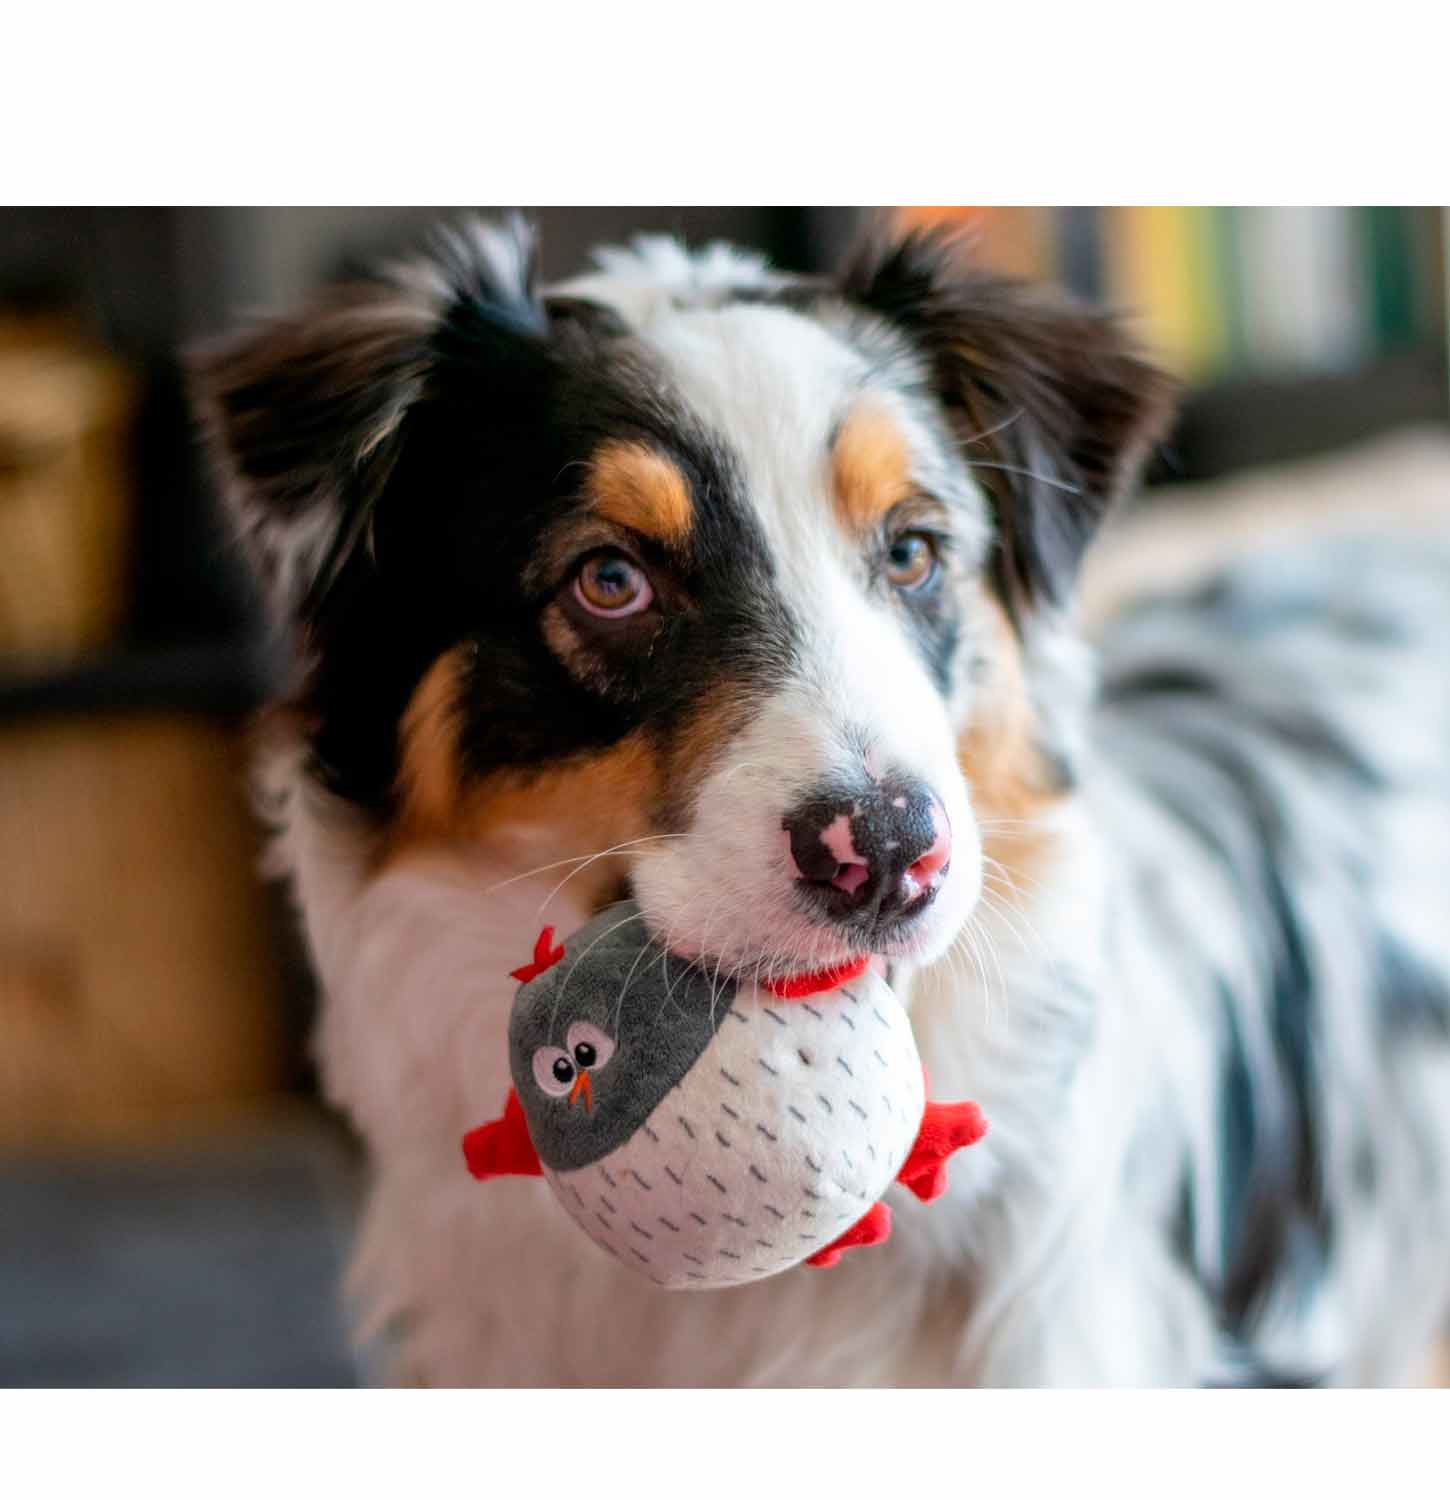 EETOYS Dog Plush Toy - A Stimulating Interactive Dog Toys for